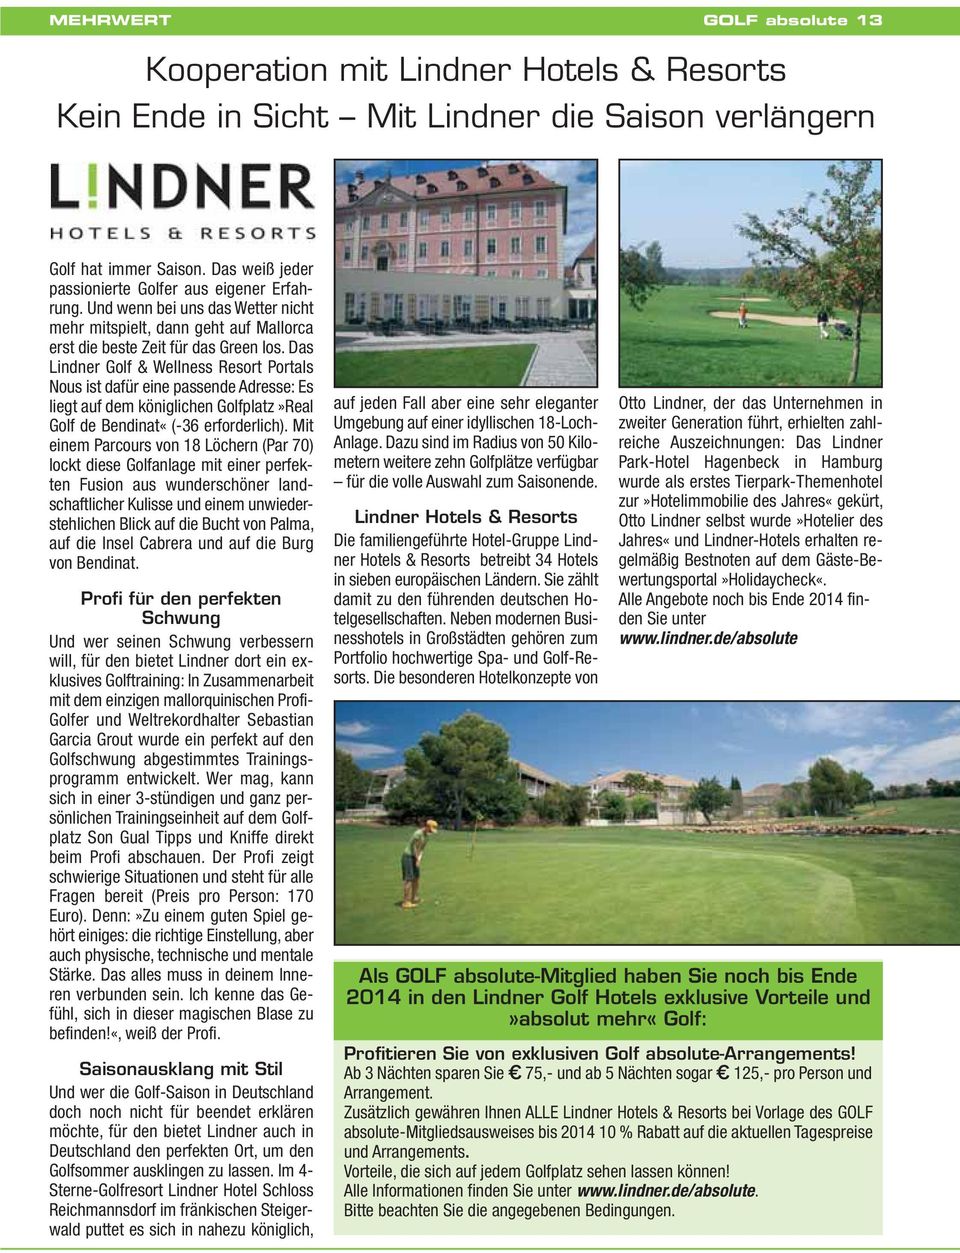 Das Lindner Golf & Wellness Resort Portals Nous ist dafür eine passende Adresse: Es liegt auf dem königlichen Golfplatz»Real Golf de Bendinat«(-36 erforderlich).